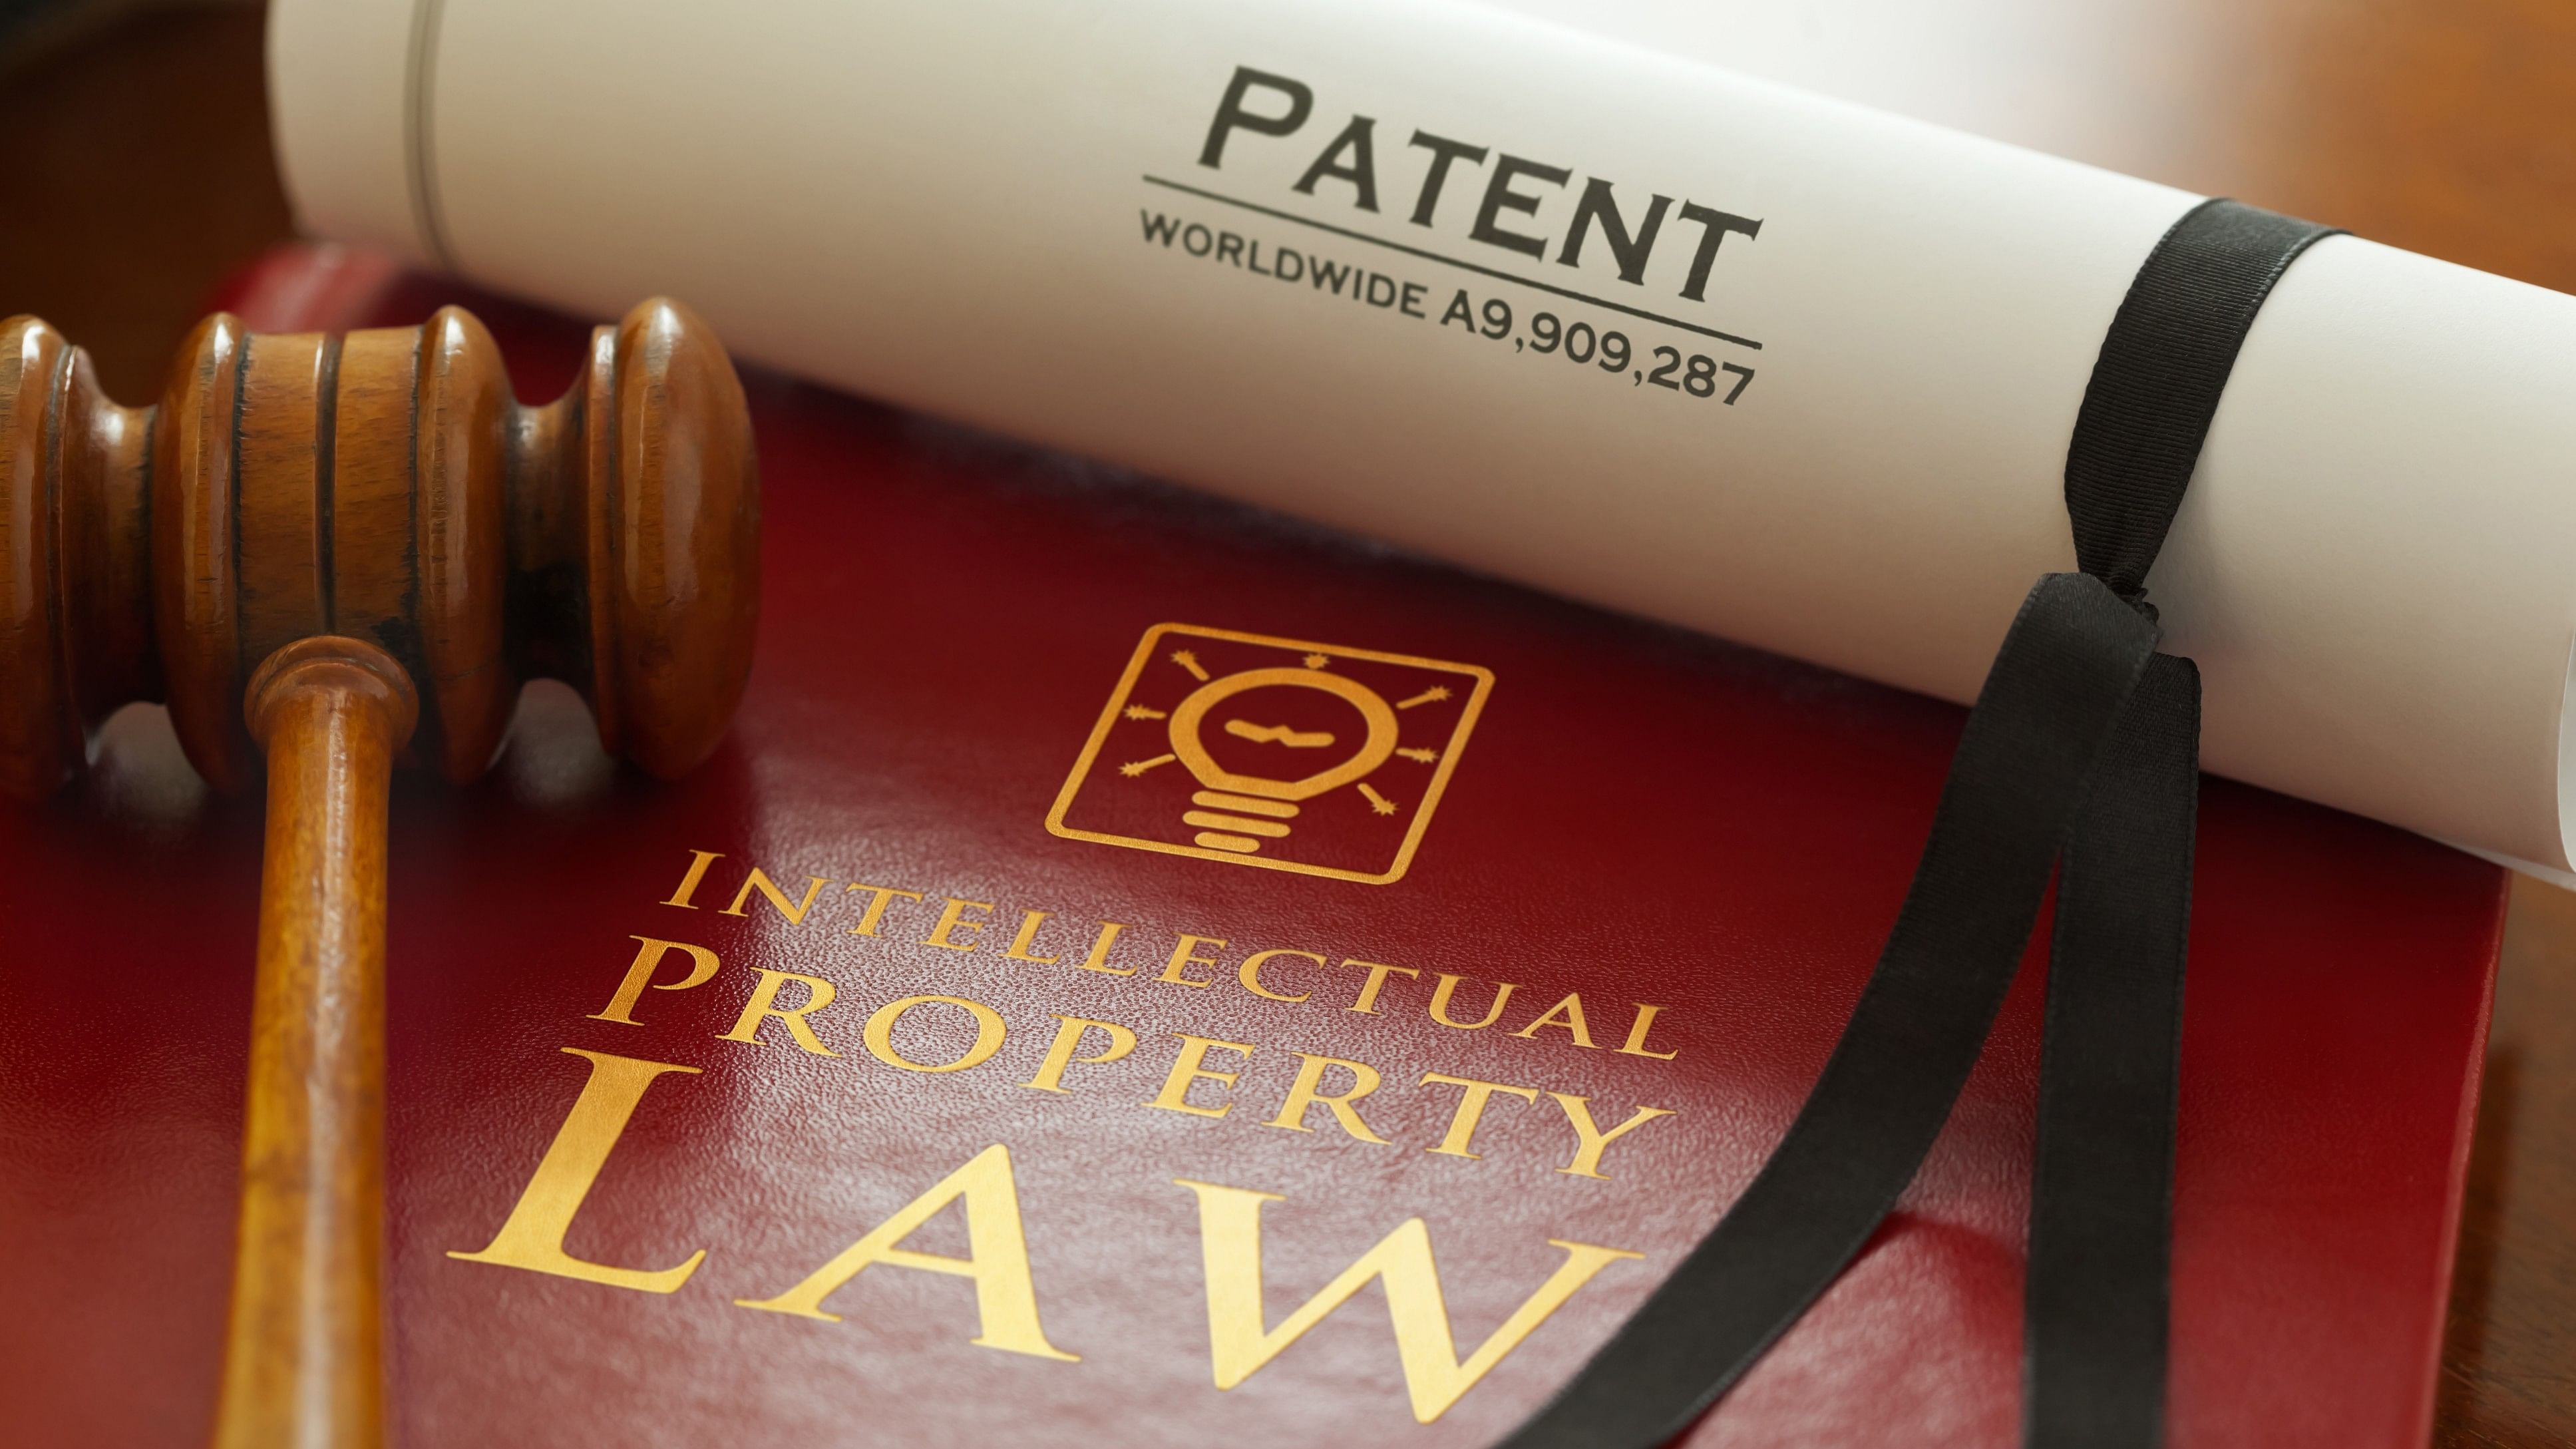 <div class="paragraphs"><p>Patent.</p></div>